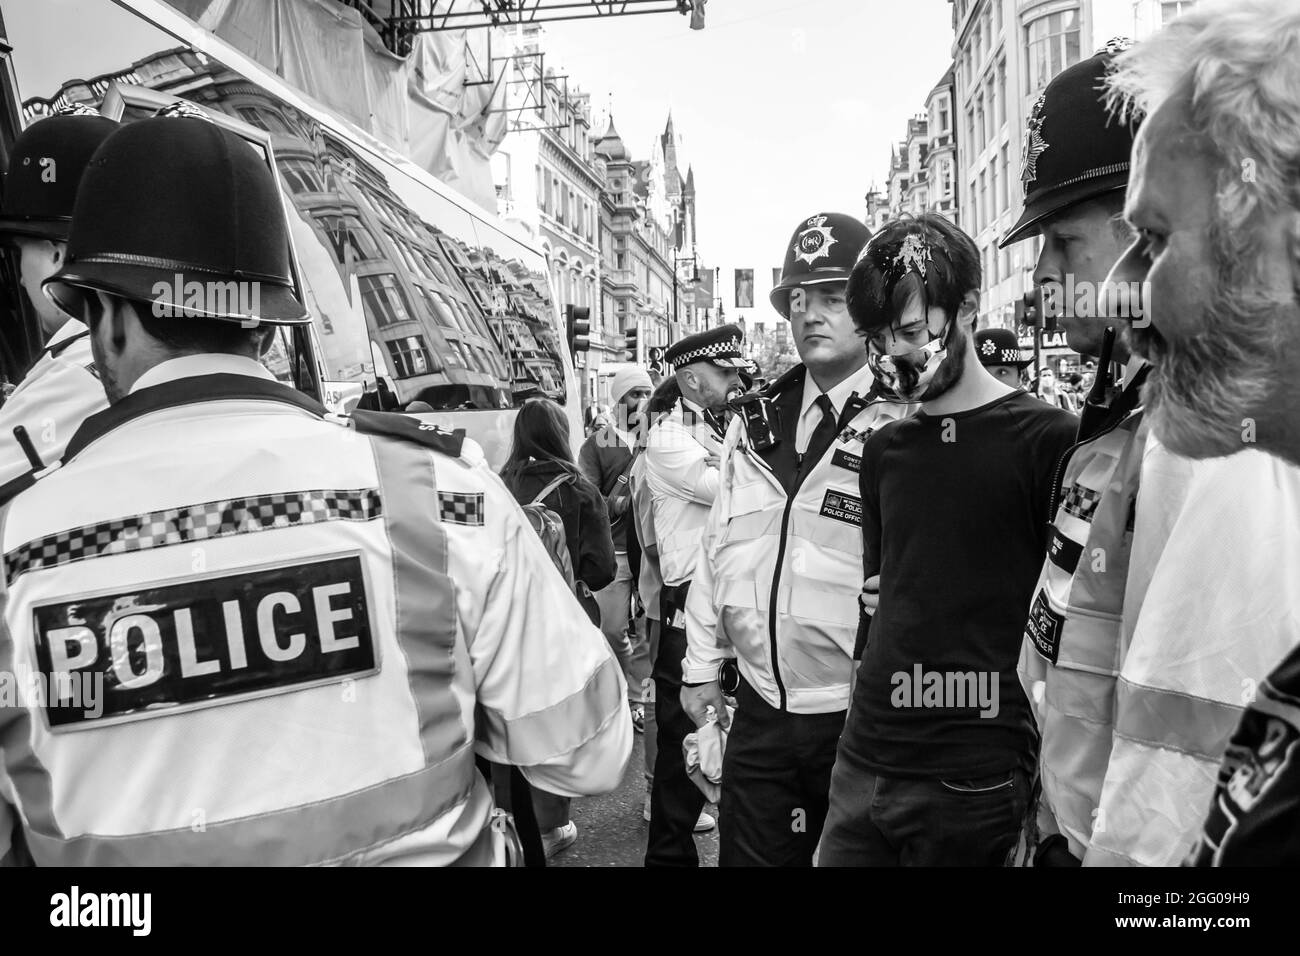 LONDRES, ANGLETERRE- 24 août 2021 : arrestation du protestant de la rébellion de l'extinction après avoir protesté contre la mode des combustibles fossiles en dehors de Selfridges Banque D'Images